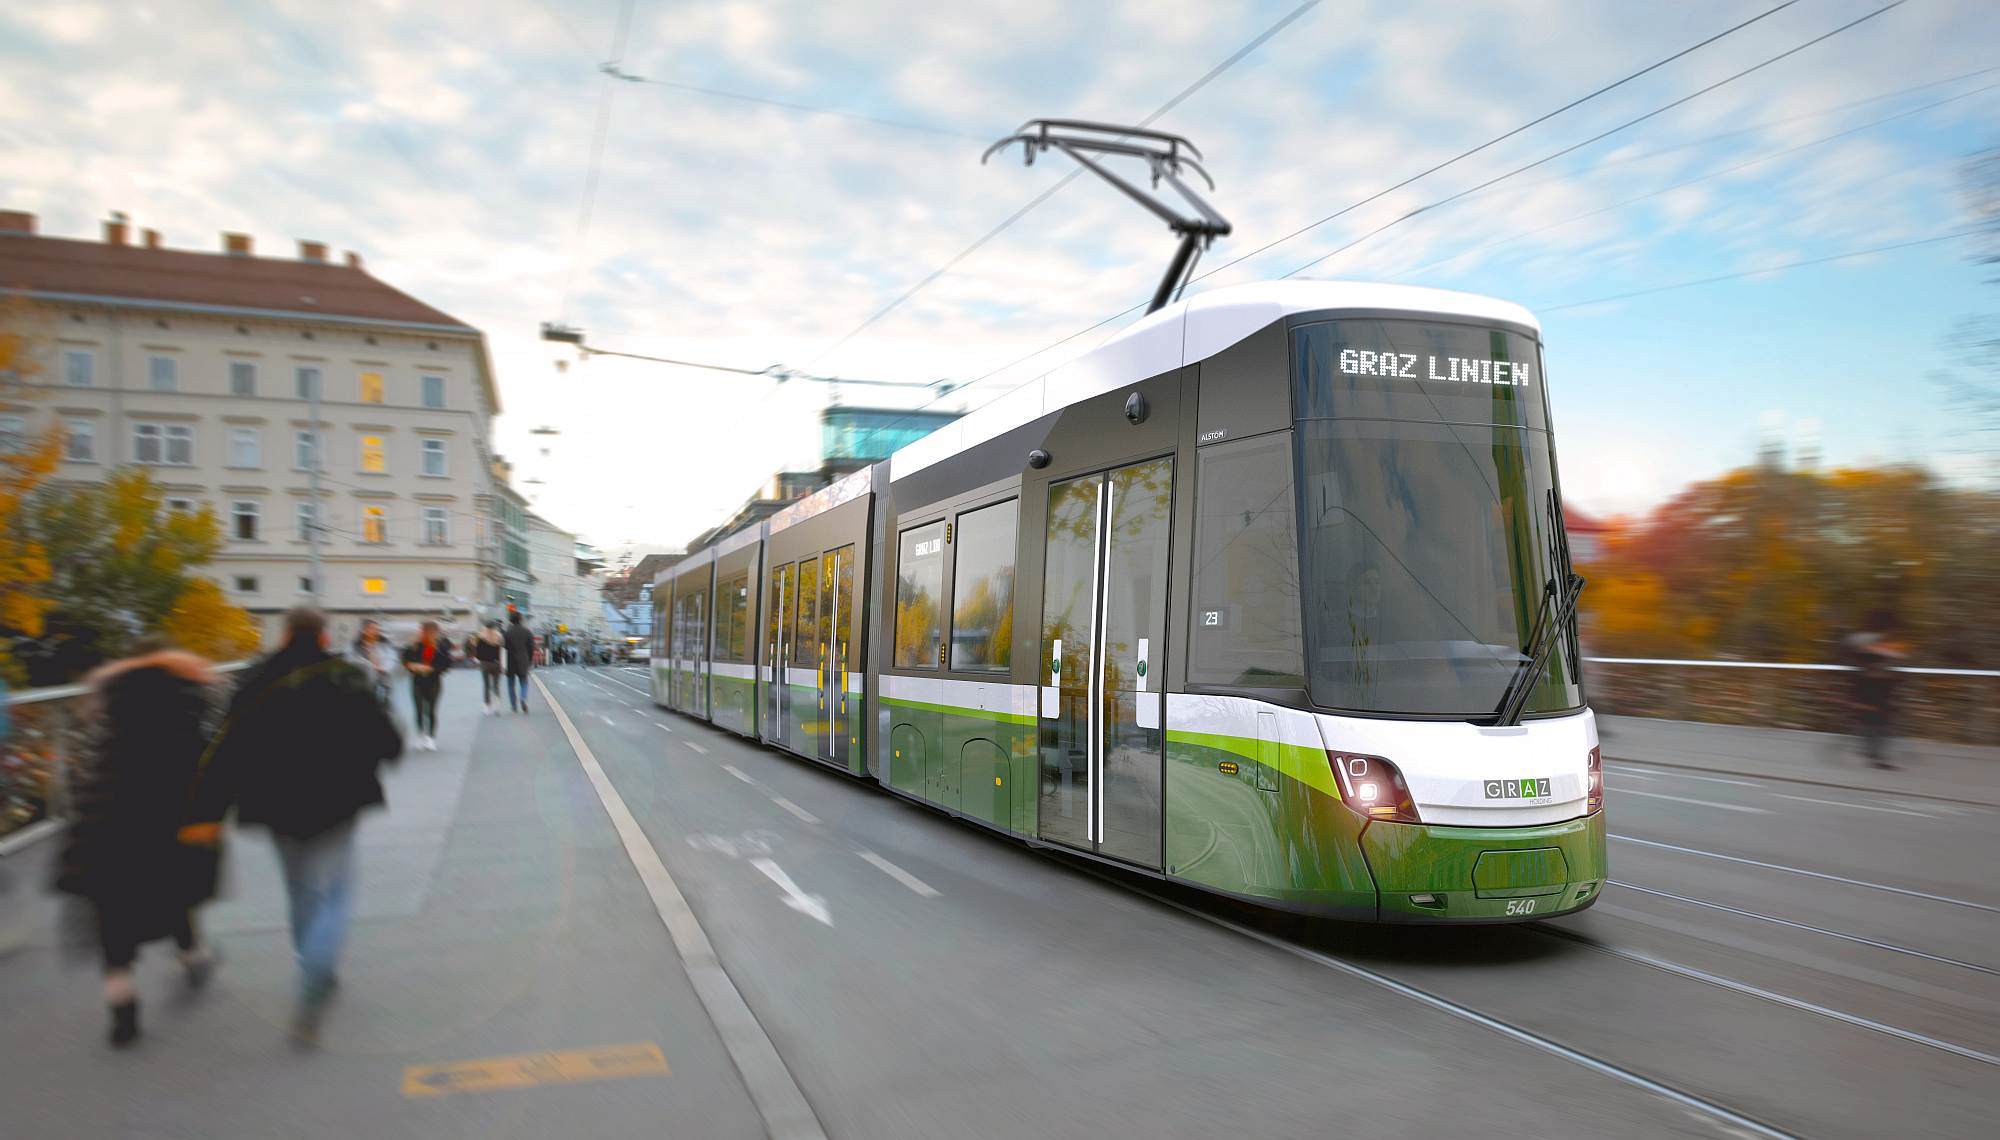 Rendering of the Alstom Flexity tram for Graz